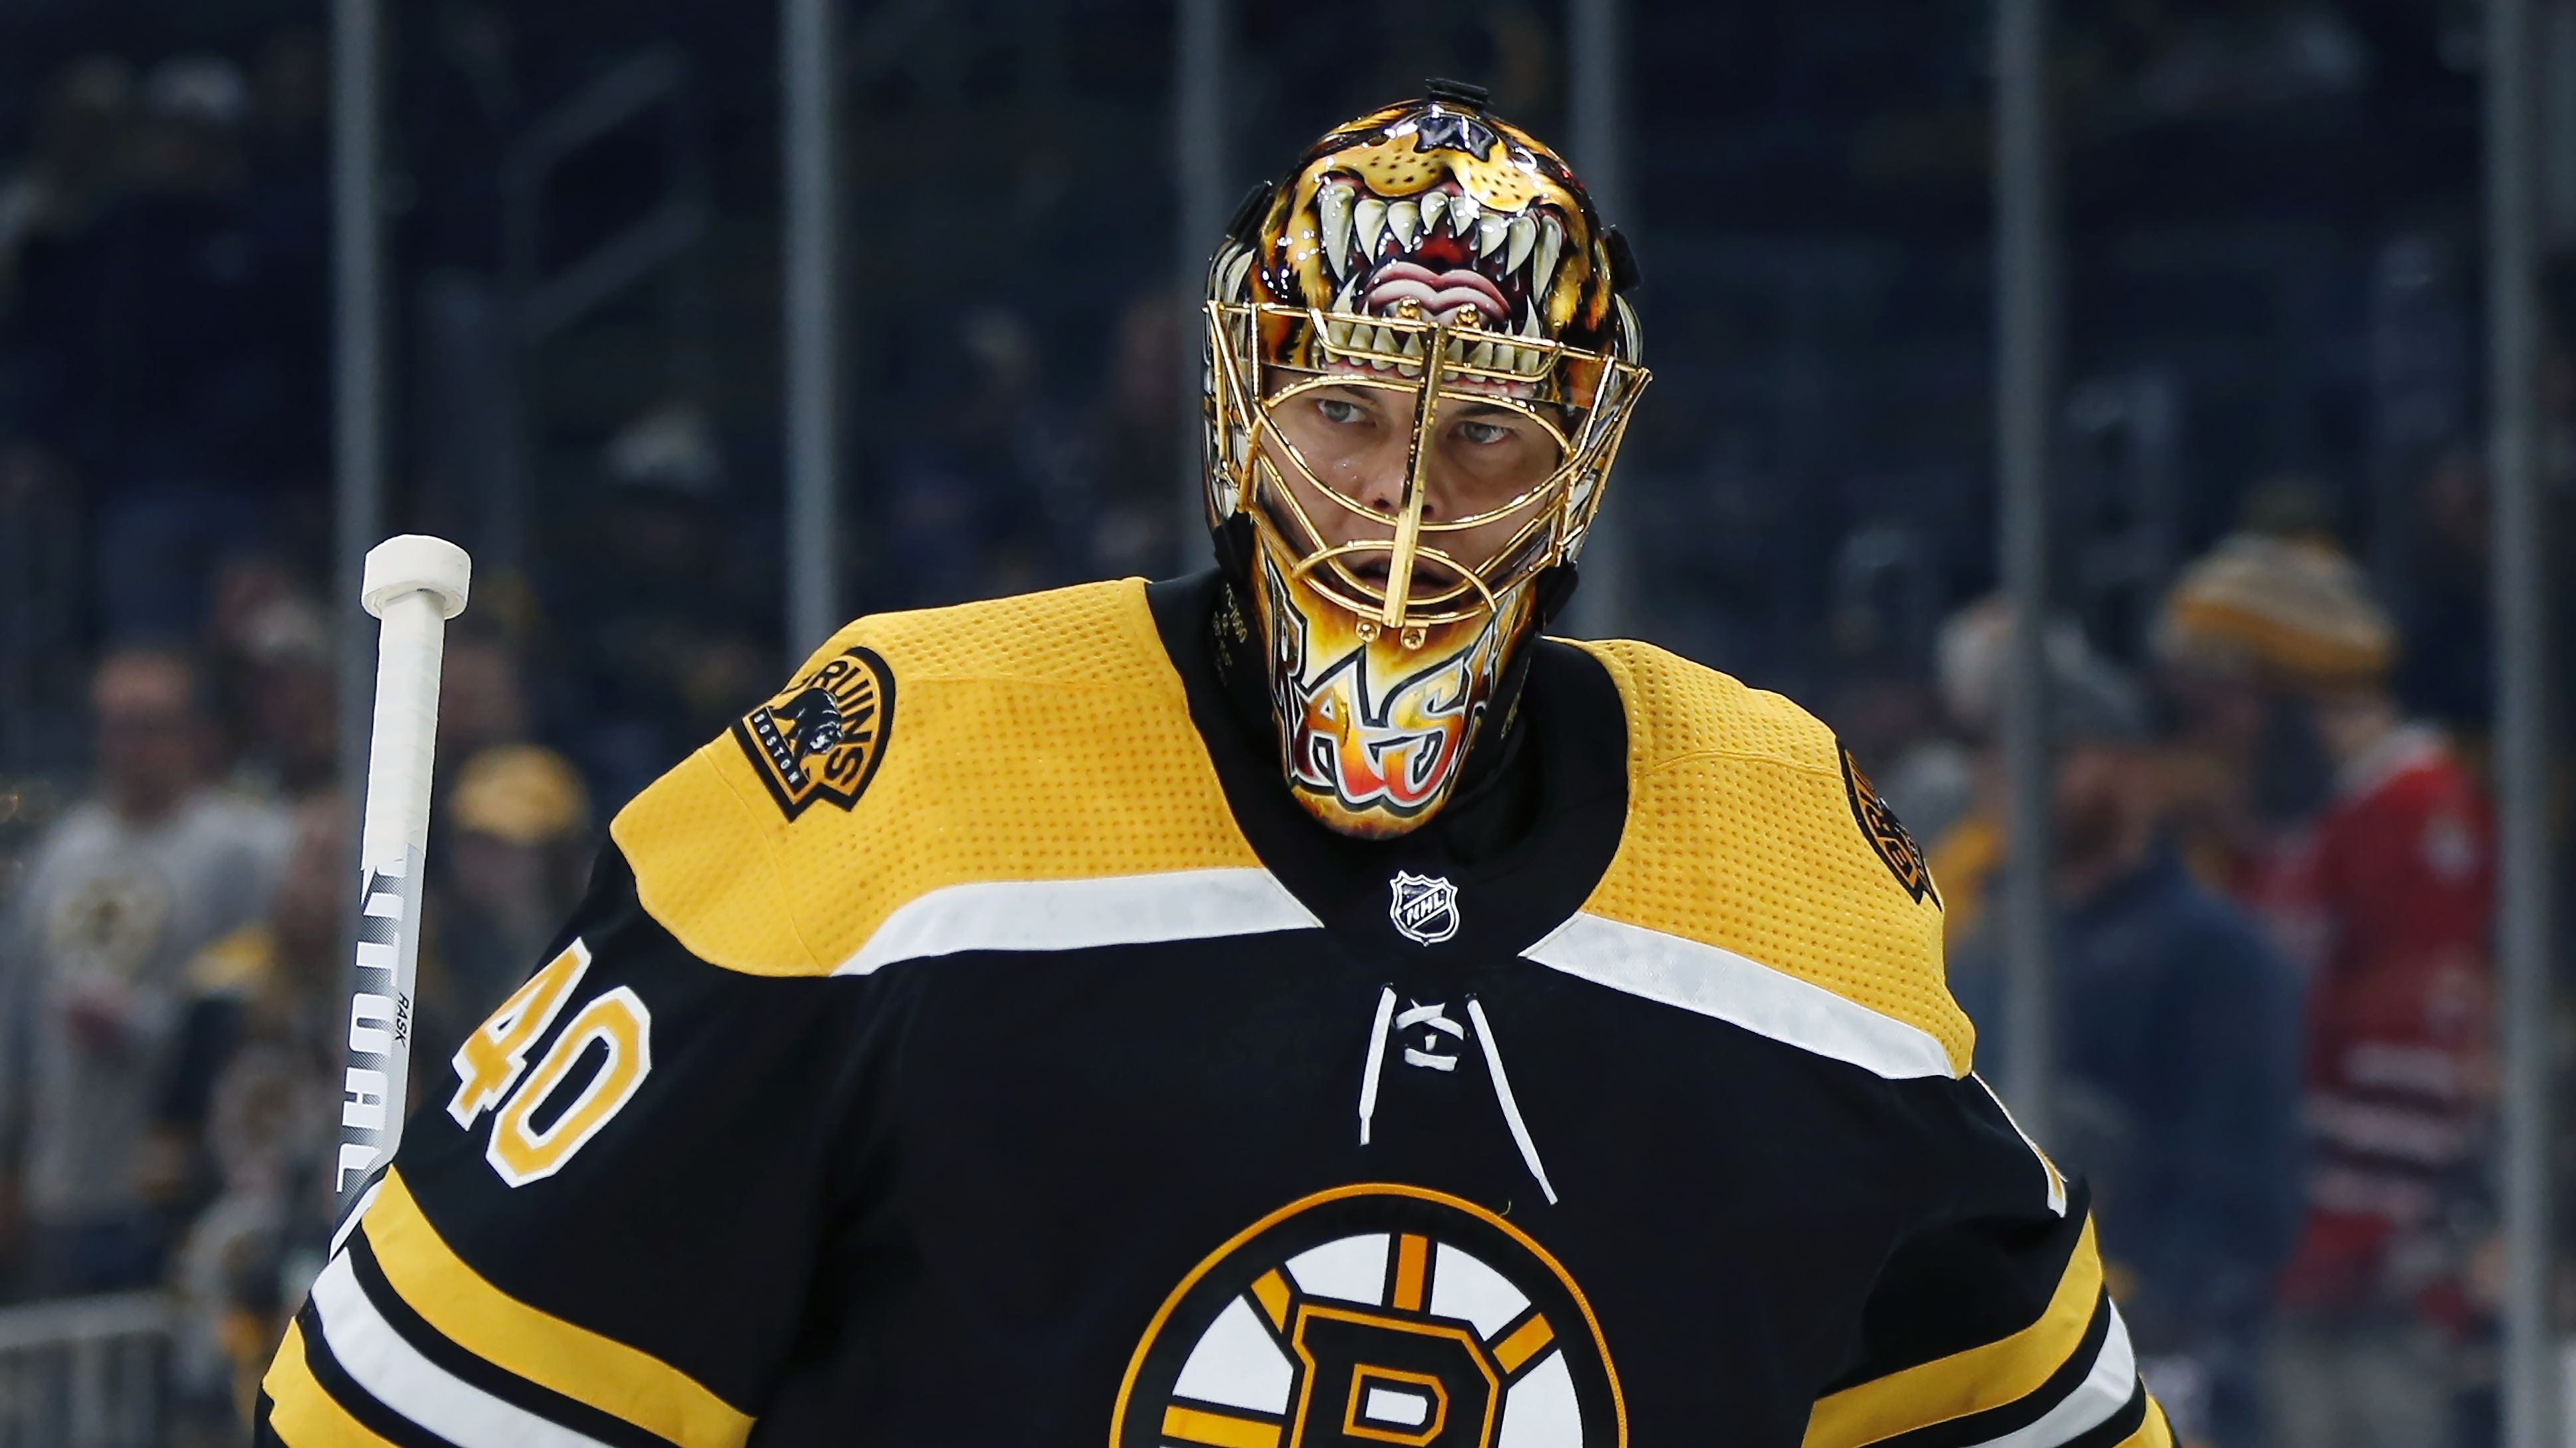 Bruins goaltender Tuukka Rask opts out of NHL season - The Boston Globe